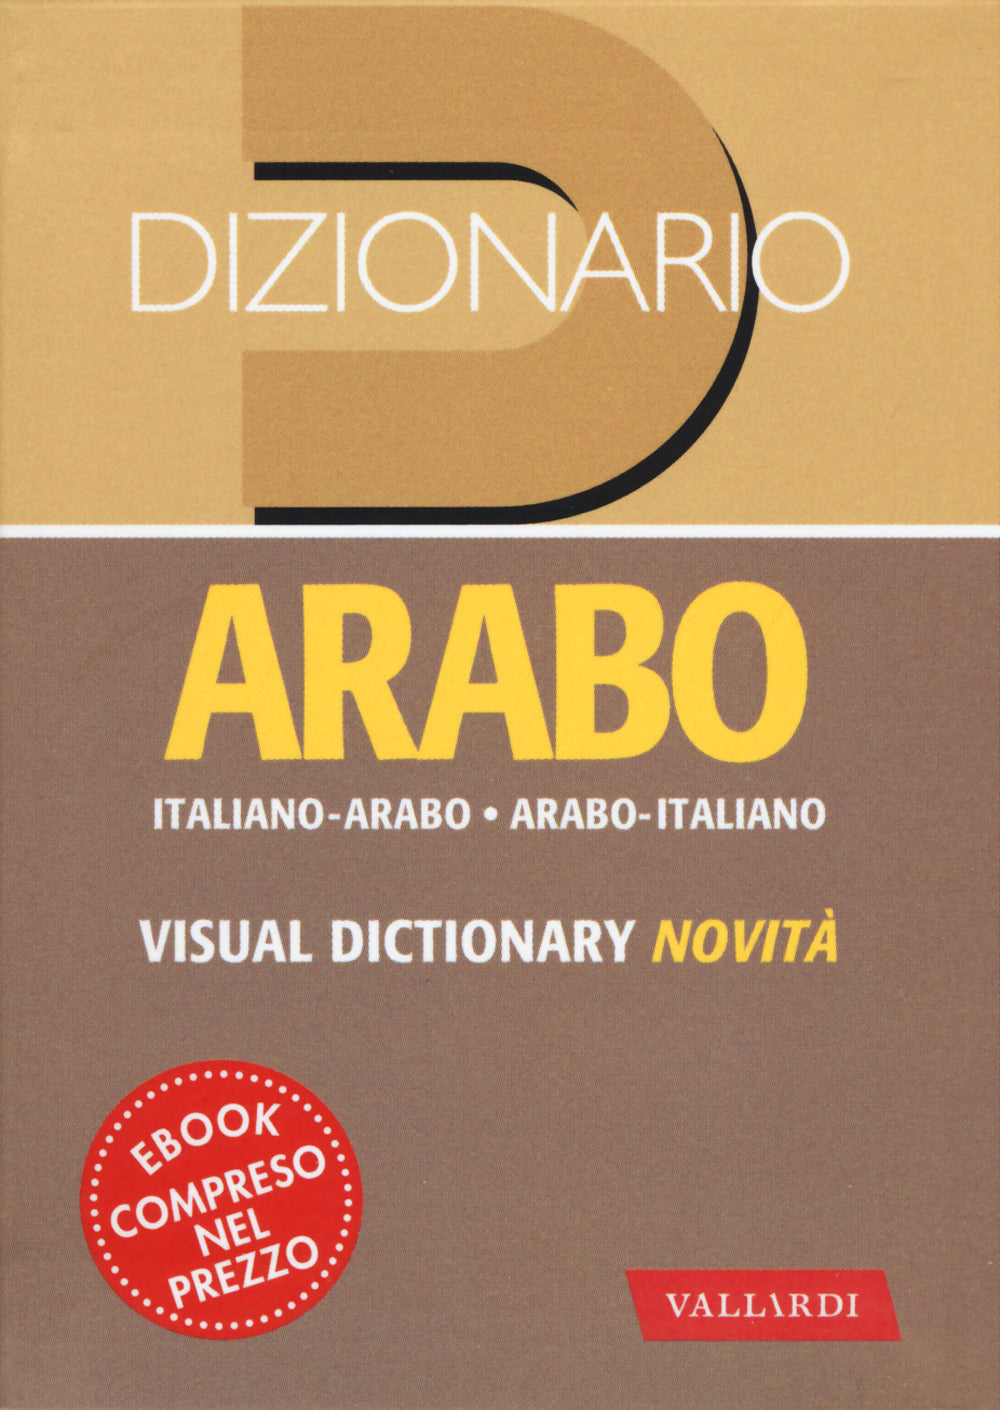 Dizionario arabo. Italiano-arabo. Arabo-italiano.